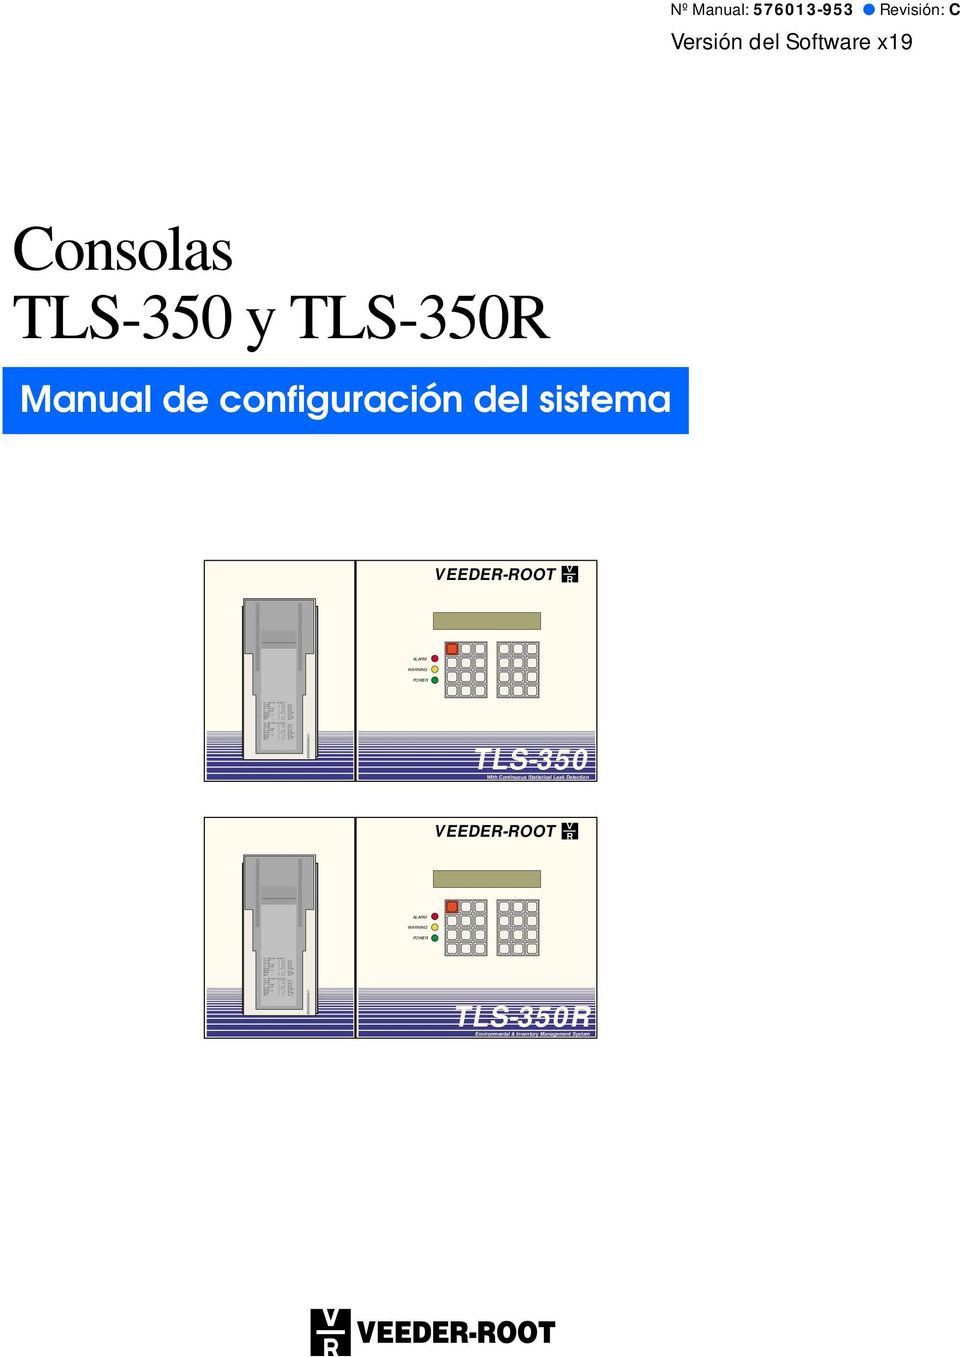 9 DEG F 9 DEG F Nº Manual: 576013-953 Revisión: C Versión del Software x19 Consolas TLS-350 y TLS-350R Manual de configuración del sistema VEEDER-ROOT ALARM WARNING POWER TLS-350 With Continuous